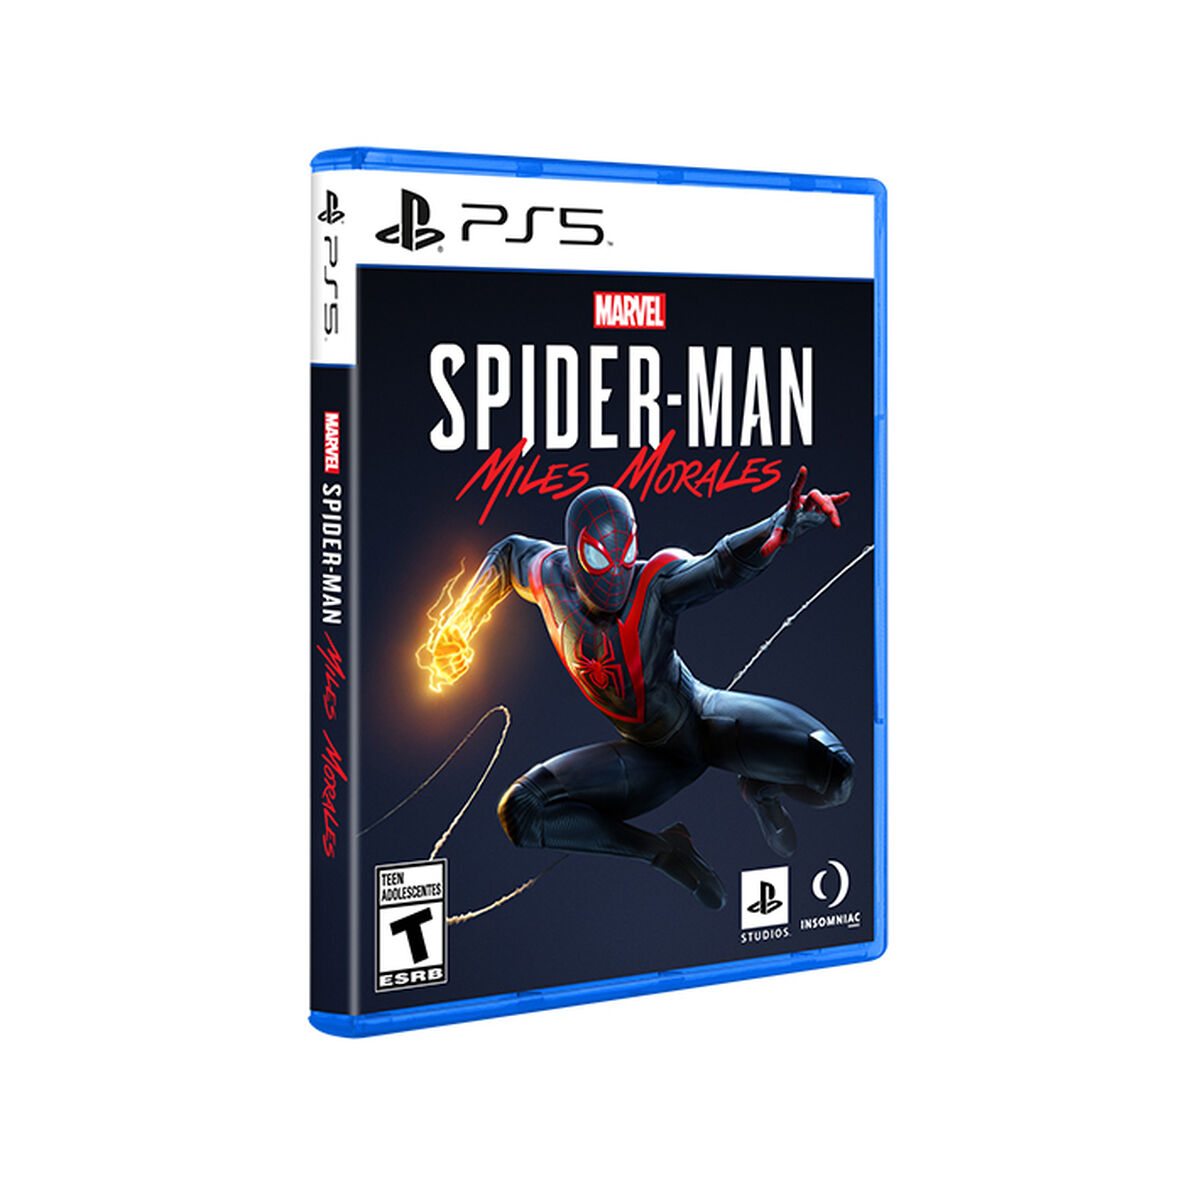 Juego Sony PS5 Spider-Man Miles Morales